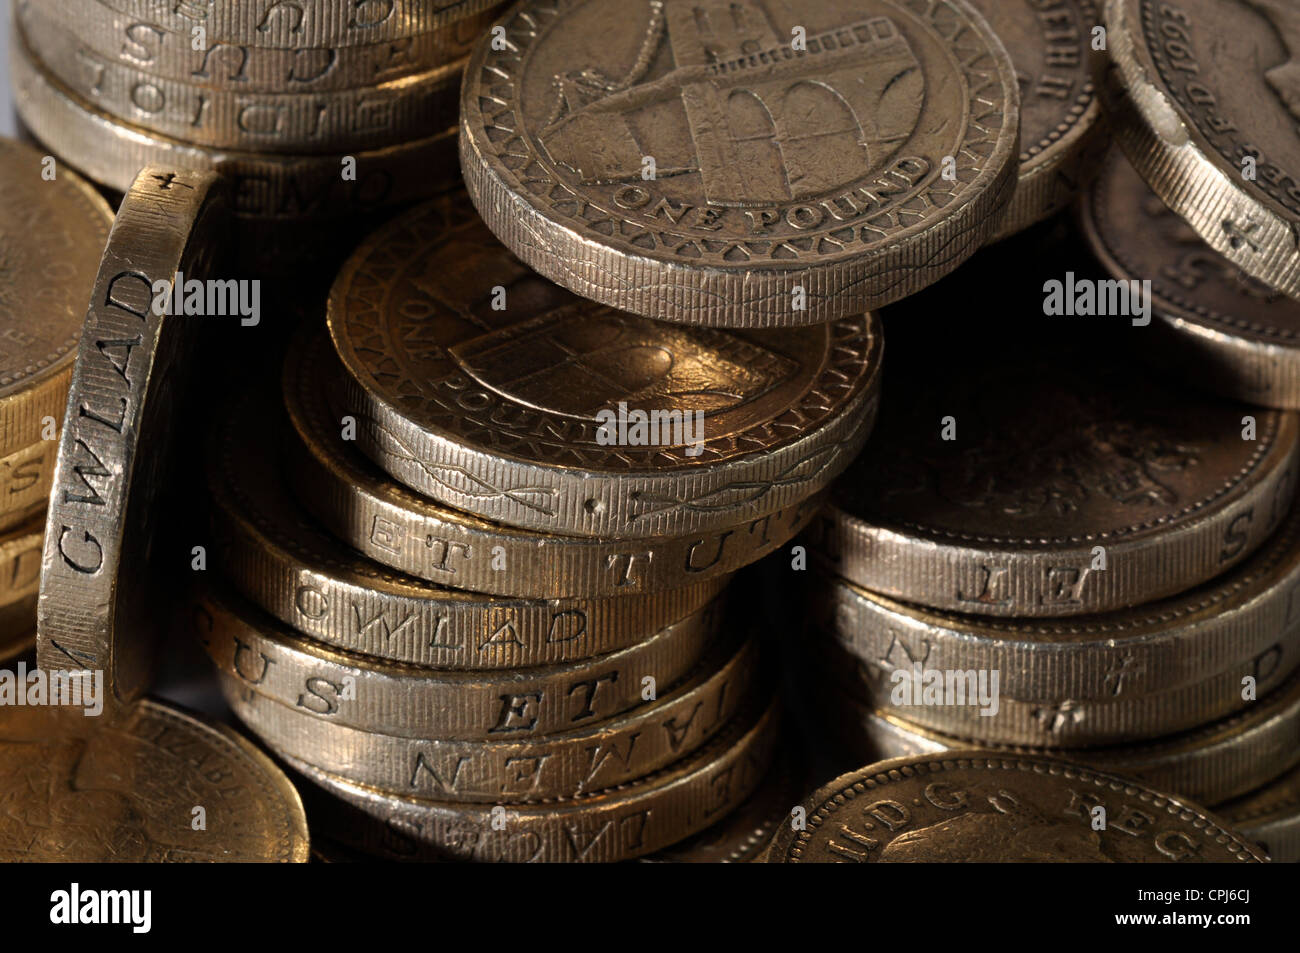 Royaume-uni une livre de monnaie, une pile de pièces livre. pile de l'argent. pile de pièces, €1 Banque D'Images